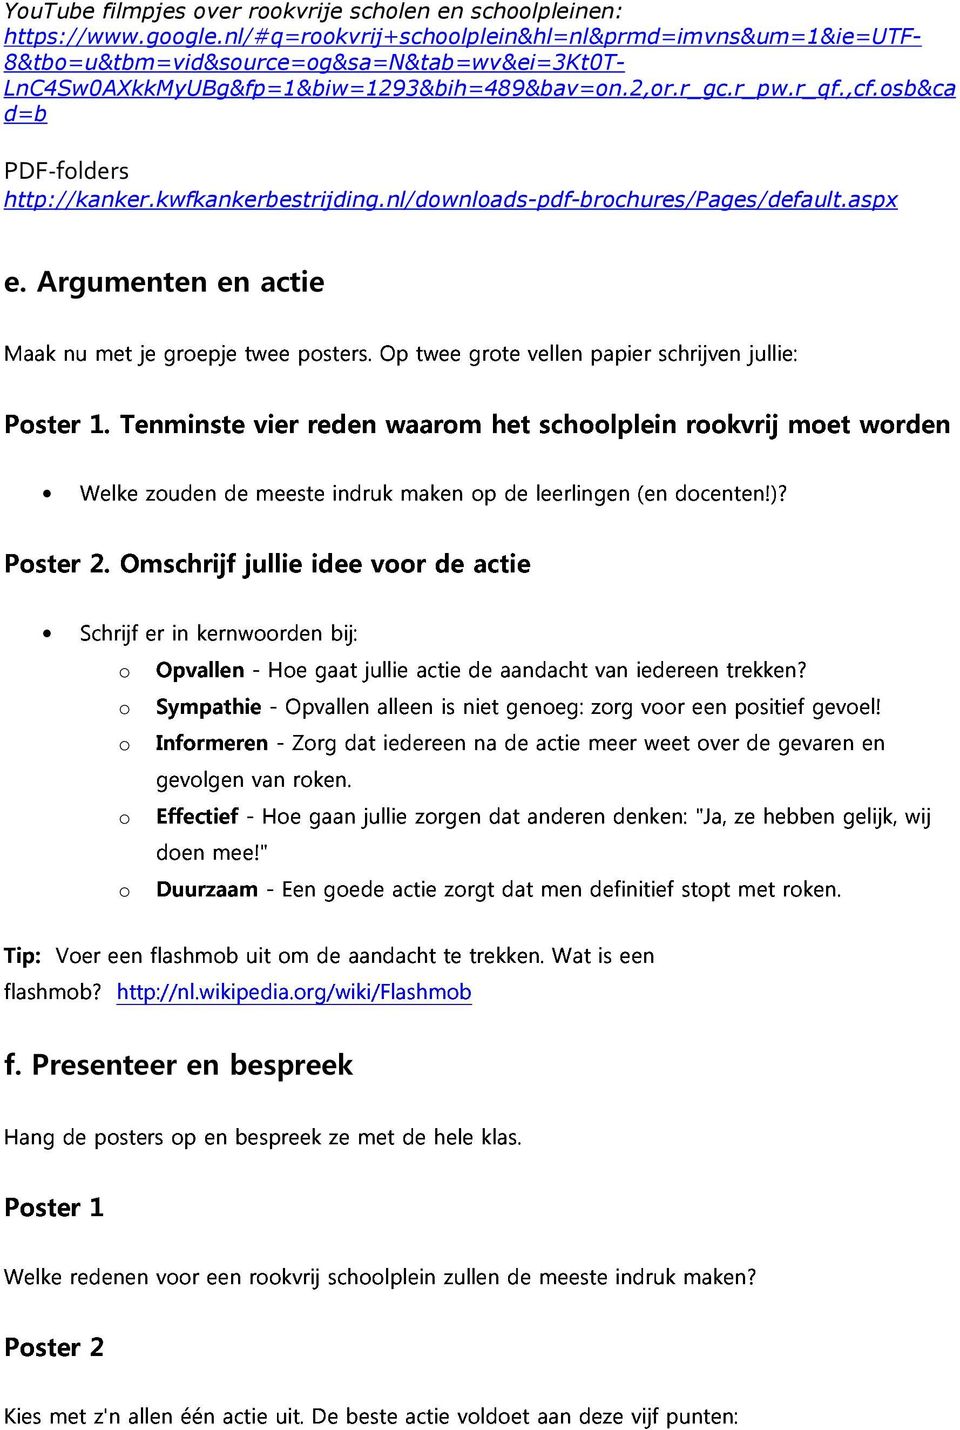 sb&ca d=b PDF-flders Maak nu met je grepje twee psters. Op twee grte vellen papier schrijven jullie: http://kanker.kwfkankerbestrijding.nl/dwnlads-pdf-brchures/pages/default.aspx e.